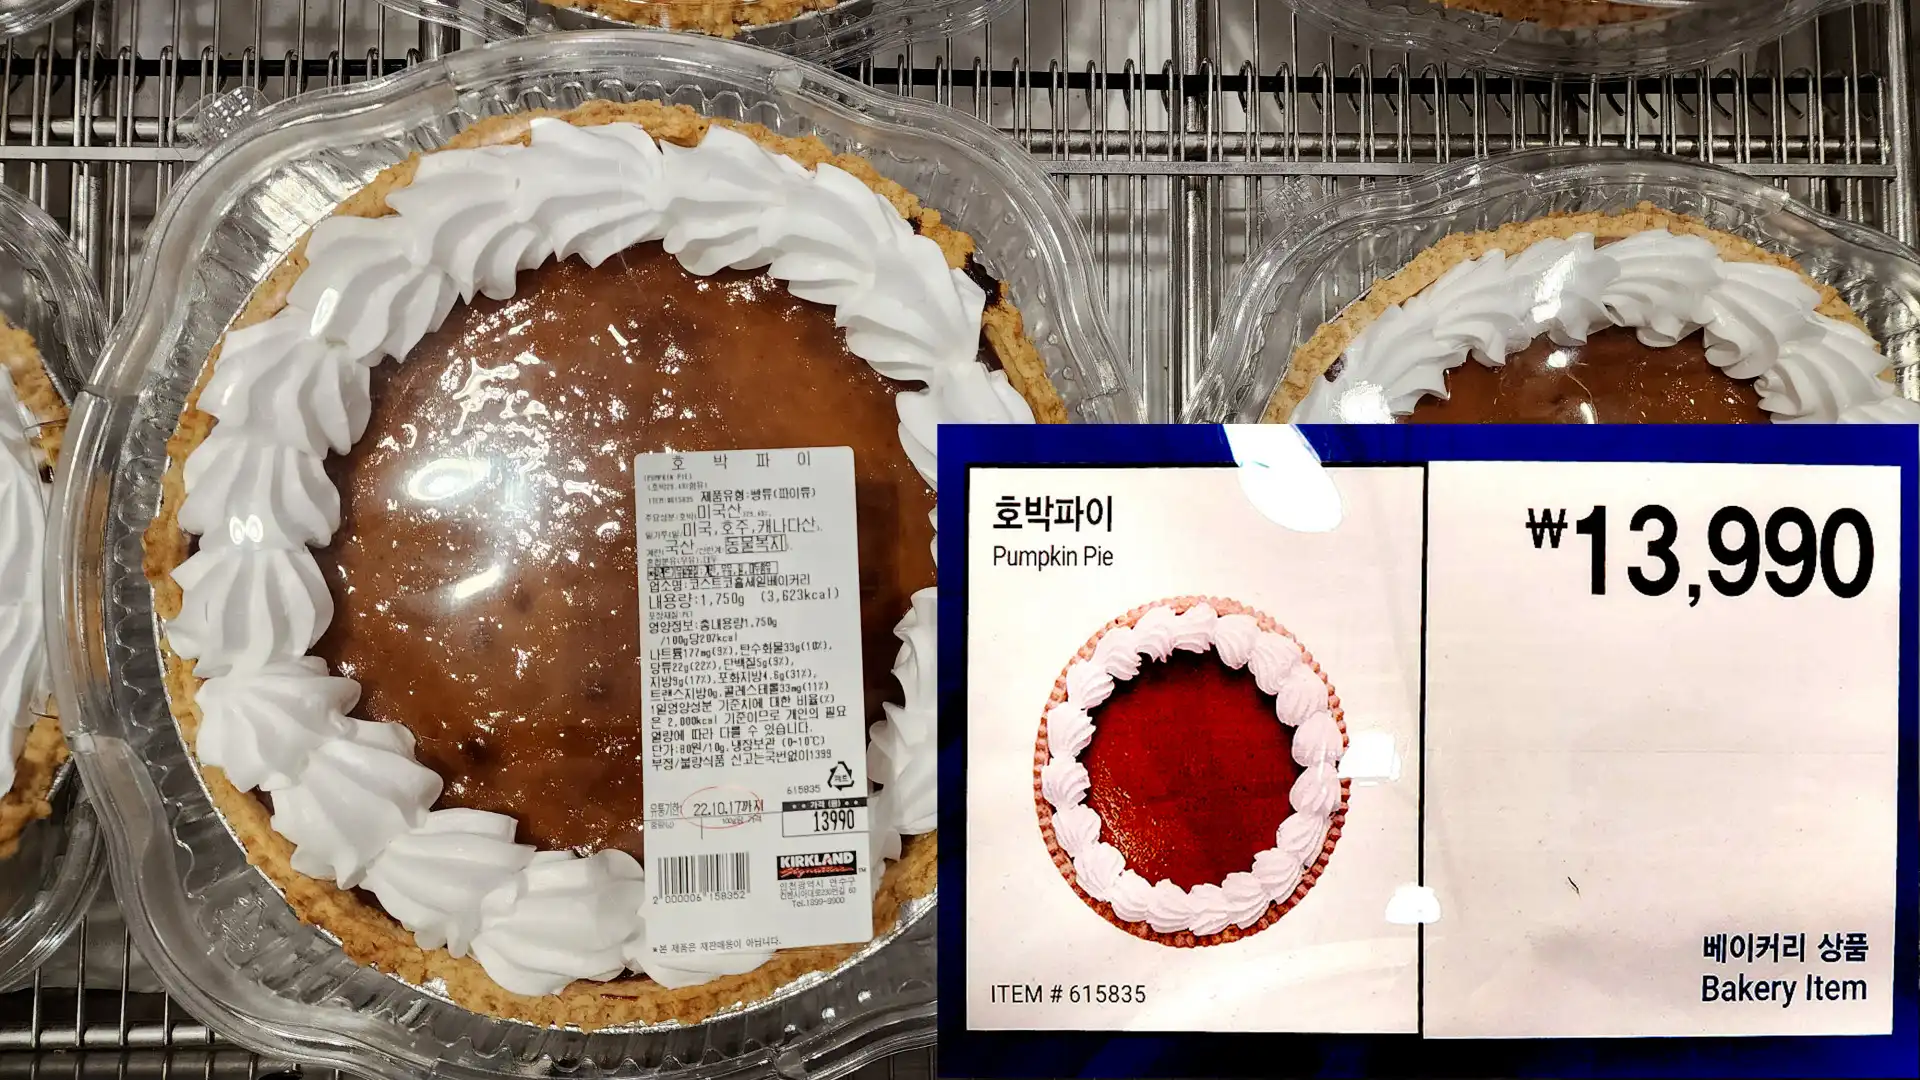 호박파이
Pumpkin Pie
13,990원